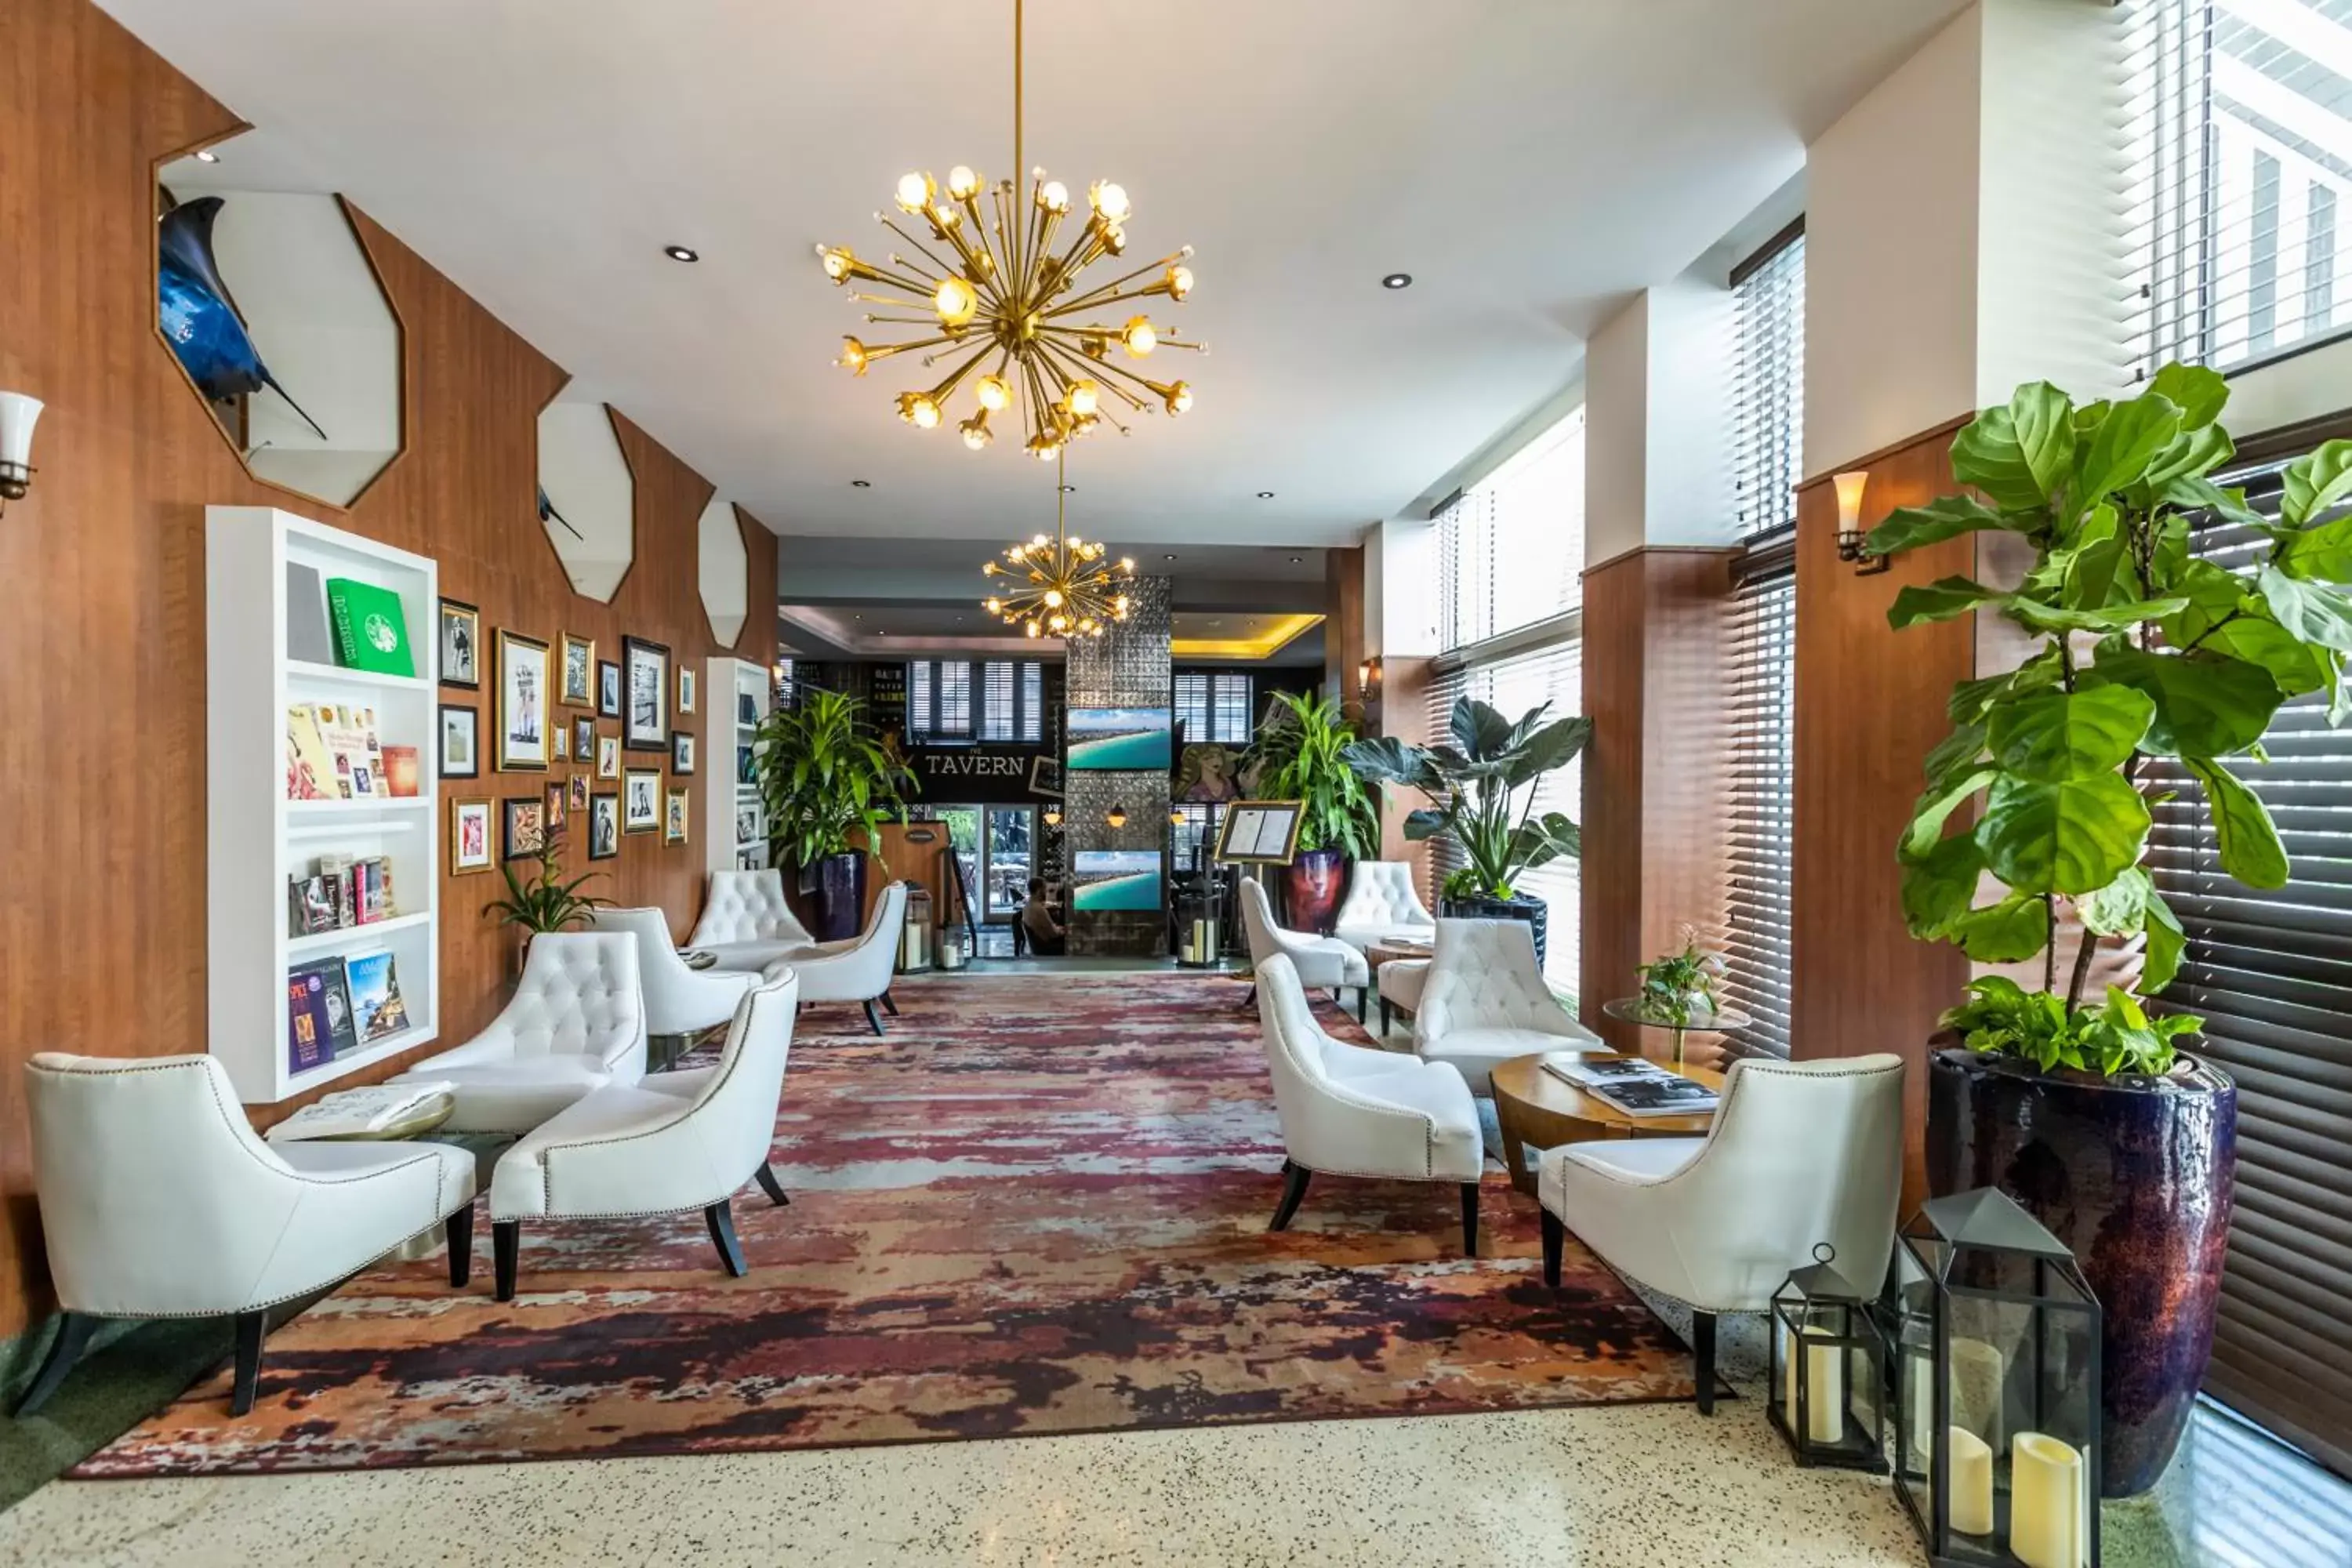 Lobby or reception in Hotel Croydon